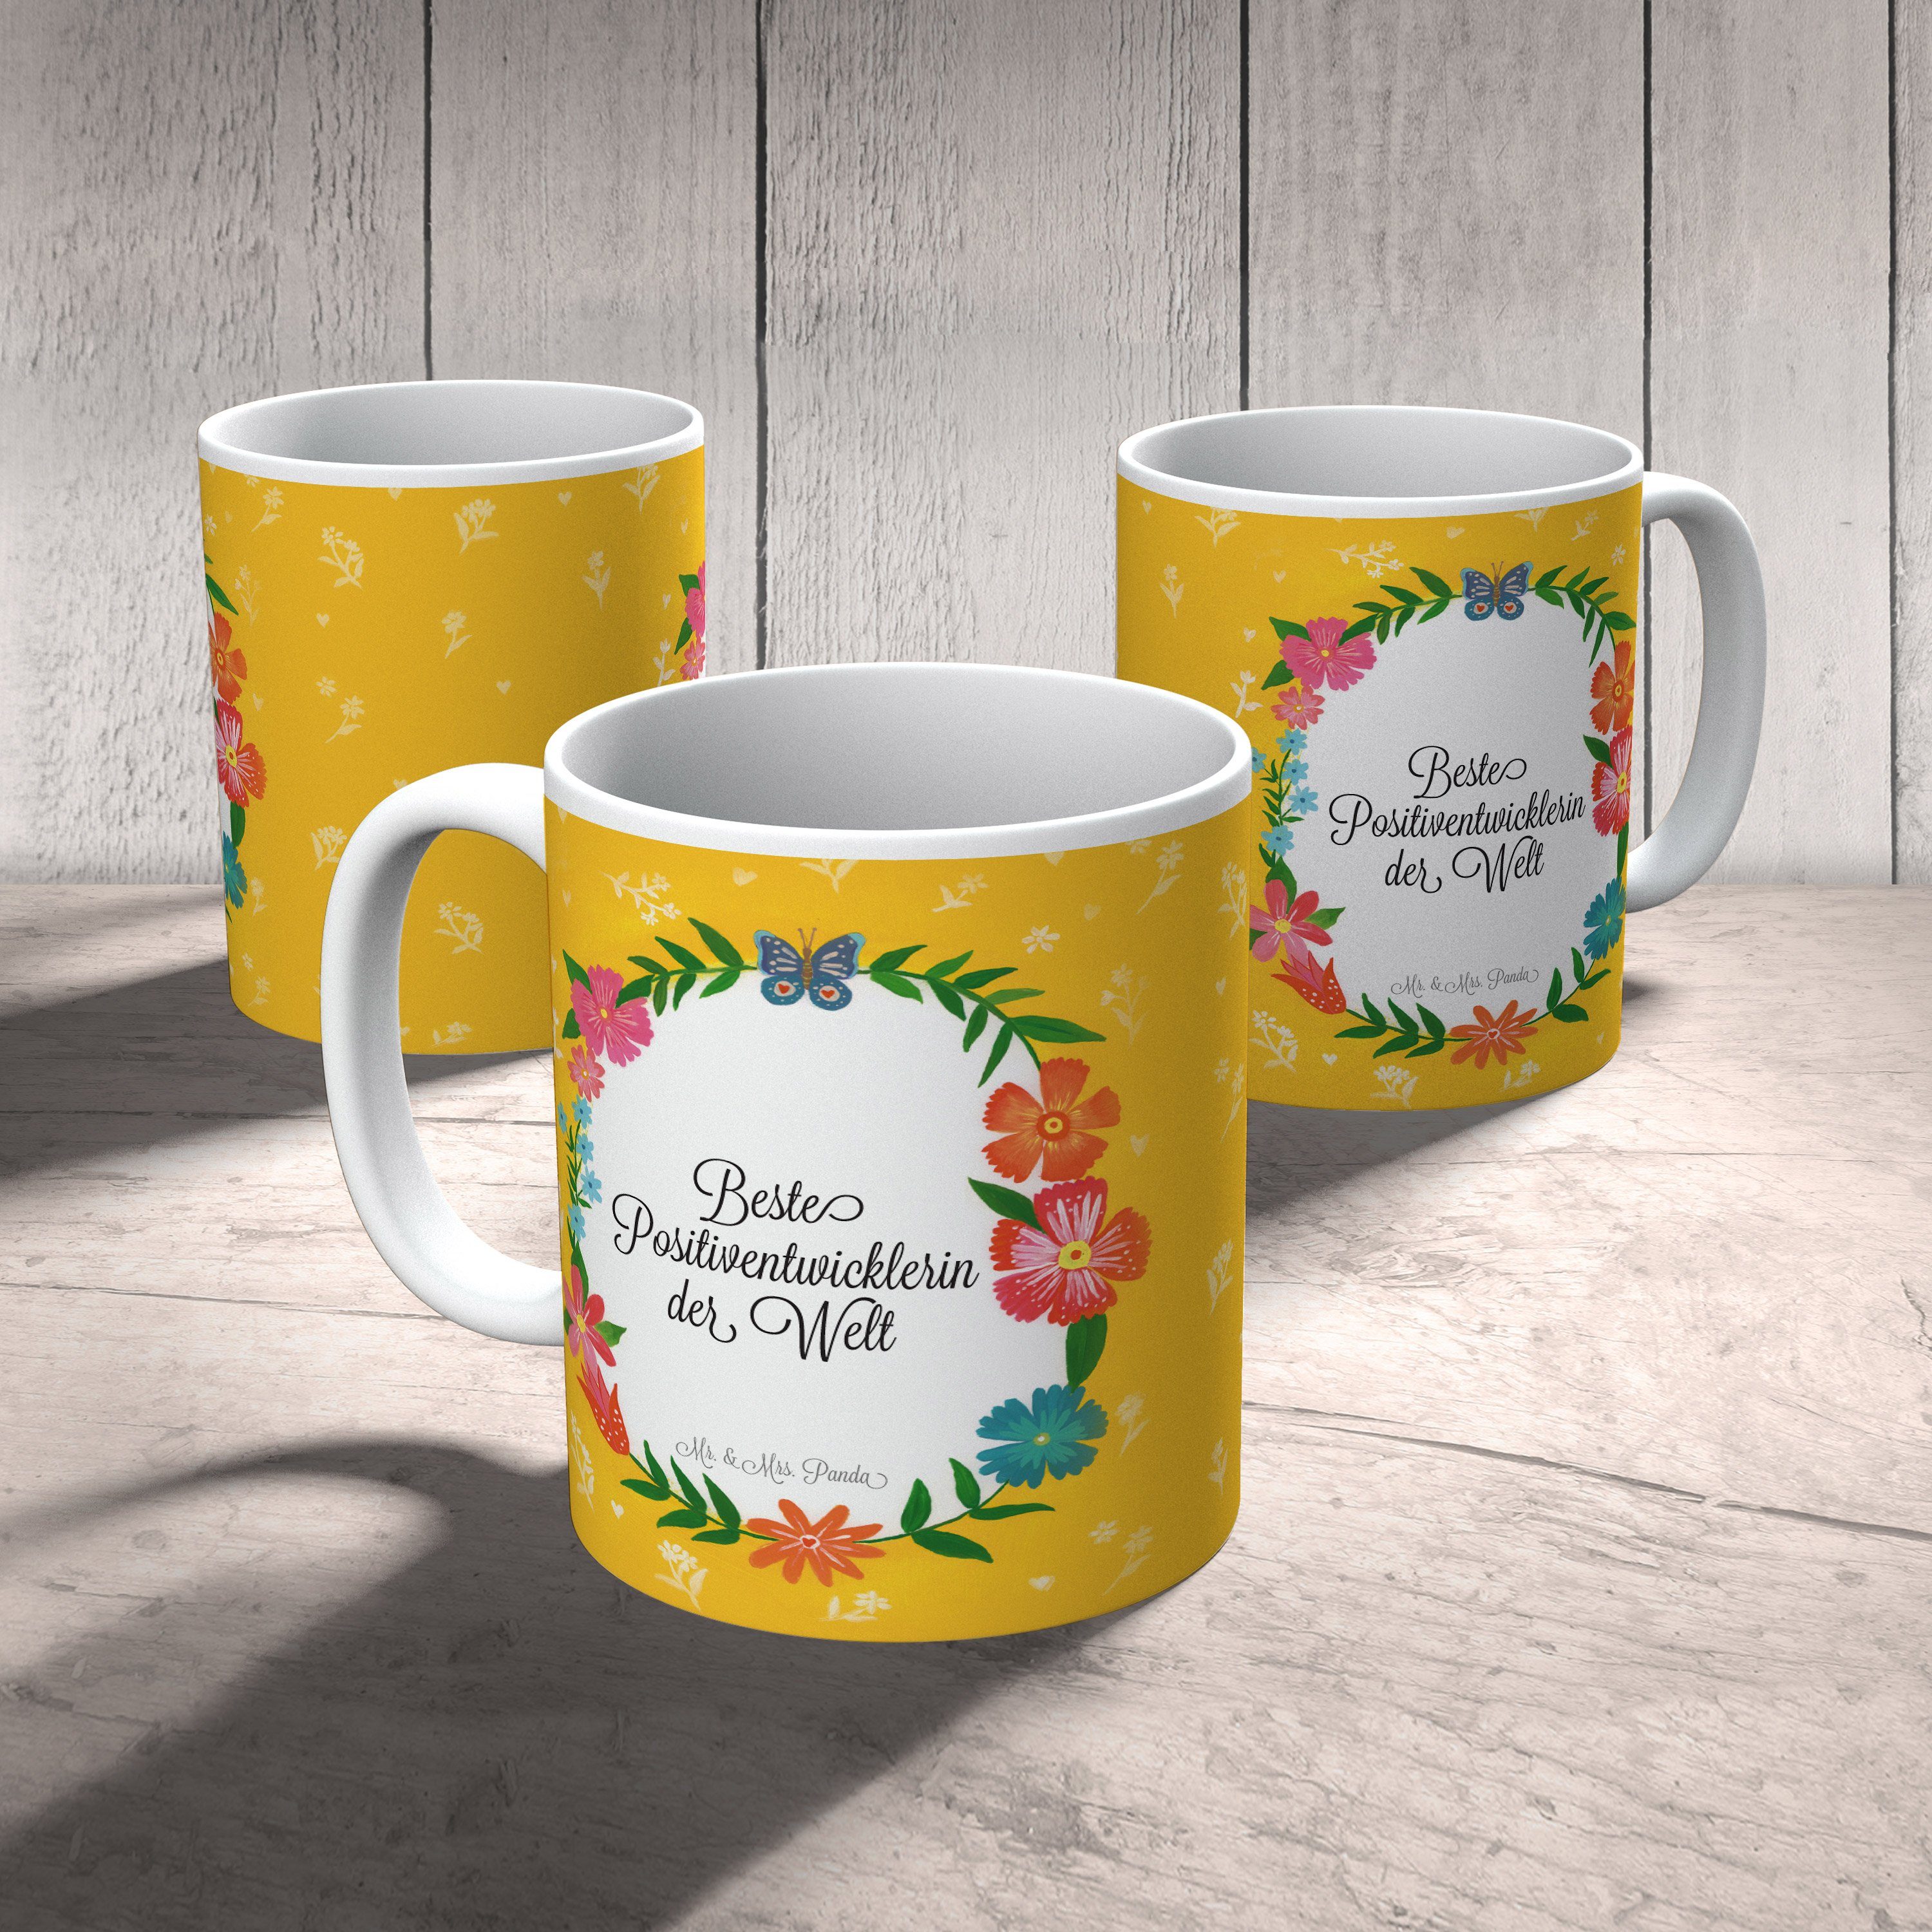 Mr. & Mrs. - Kaffeetasse, Panda Kaffeebecher, Ausbildung, Geschenk, Tasse Positiventwicklerin Keramik